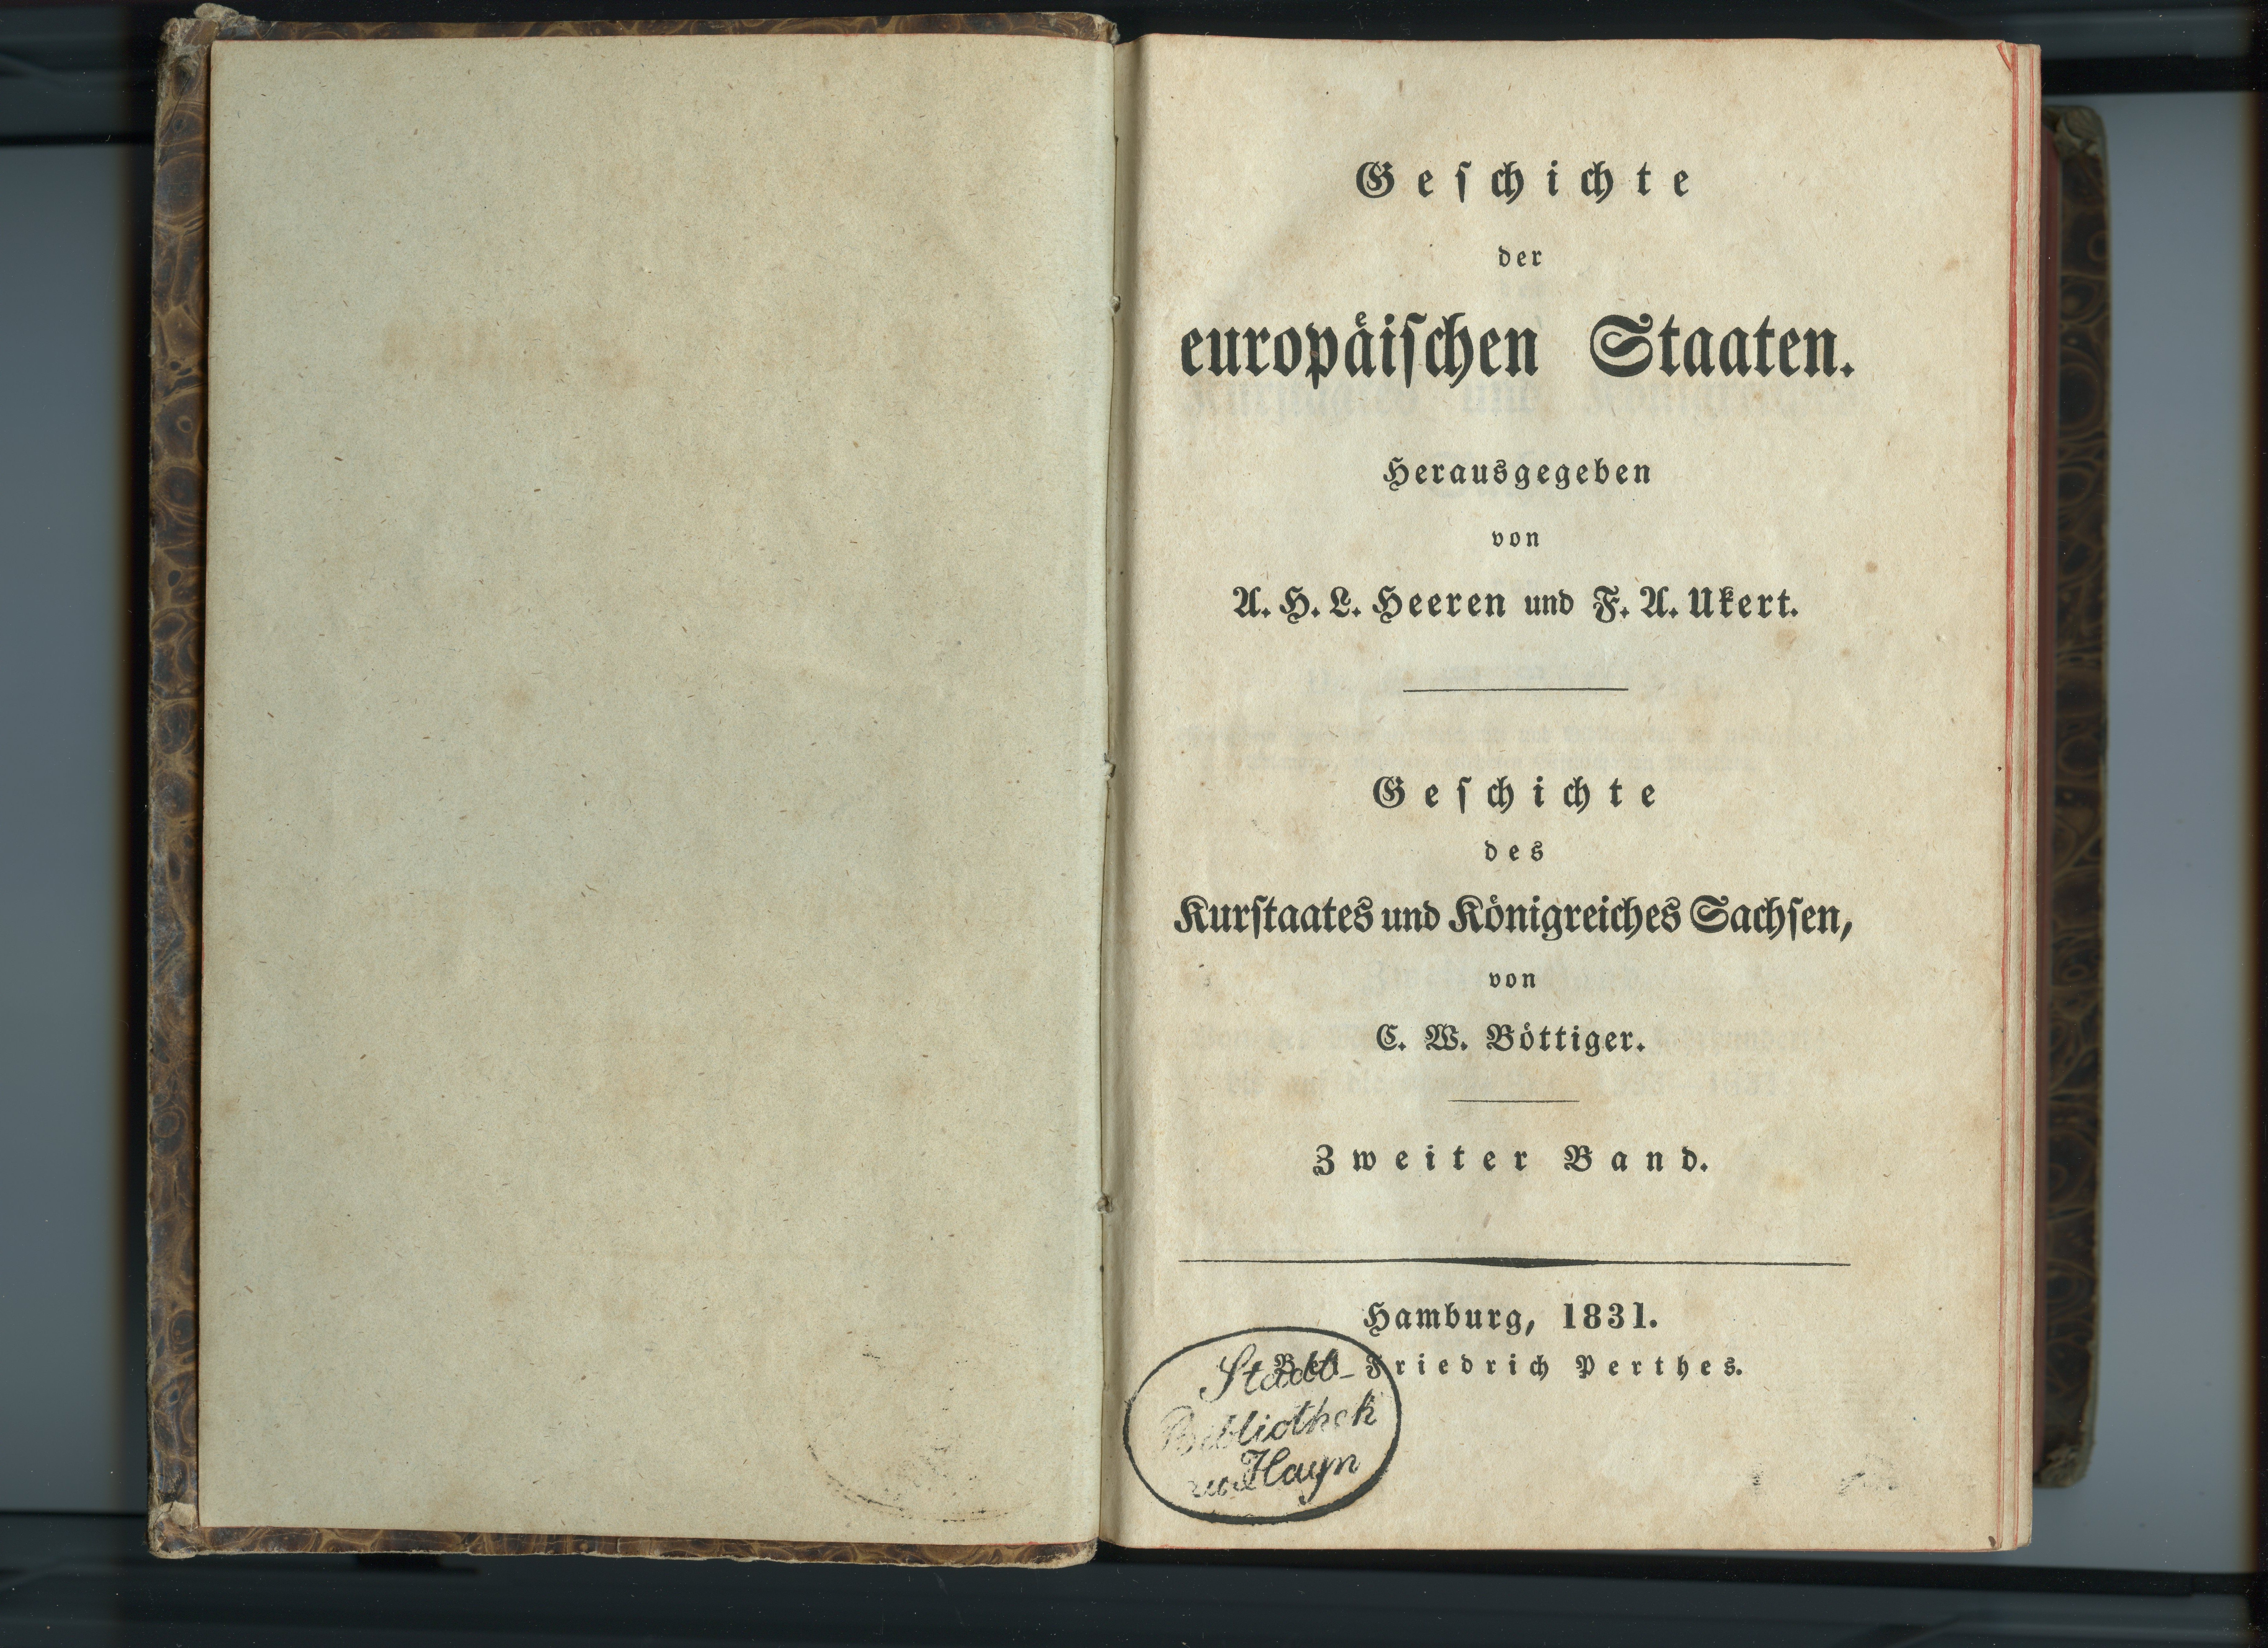 Böttiger, C.W.: Geschichte des Kurstaates und Königreiches Sachsen, Bd. 2, 1831 (Museum Alte Lateinschule CC BY-NC-SA)